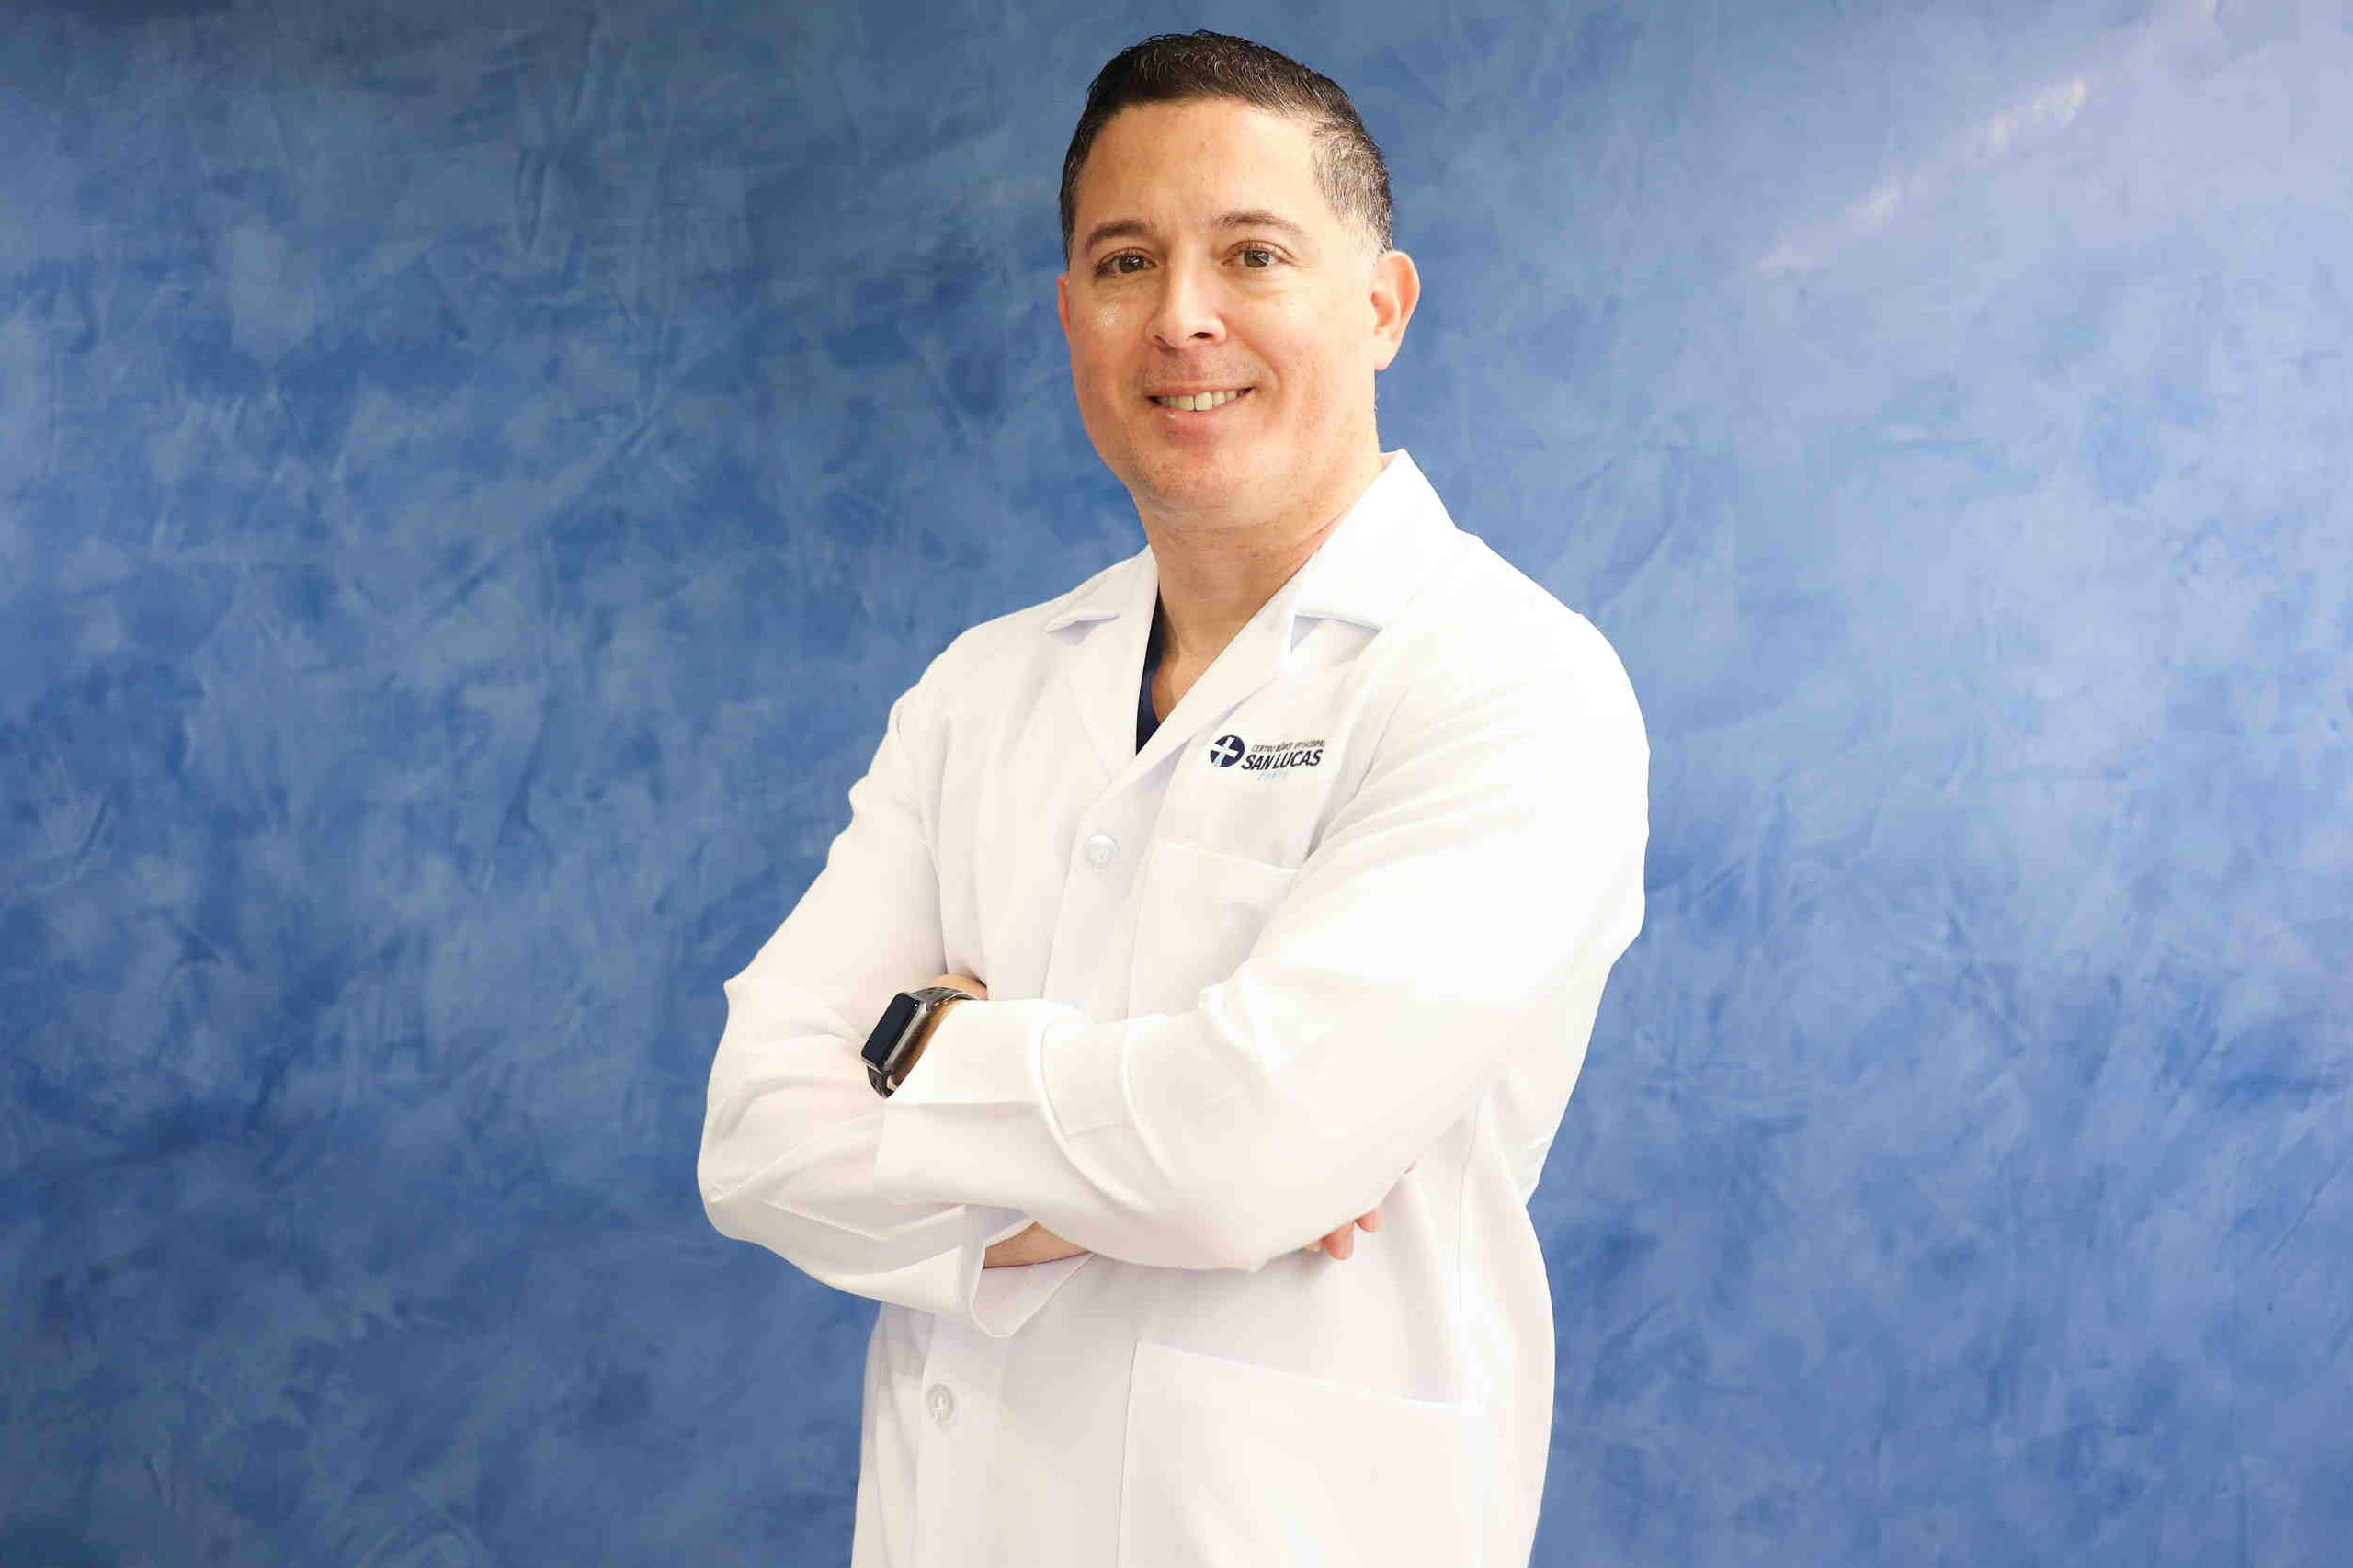 El doctor Rafael Rivera Berríos, cardiólogo intervencional y director del Instituto Cardiovascular del Centro Médico Episcopal San Lucas en Ponce